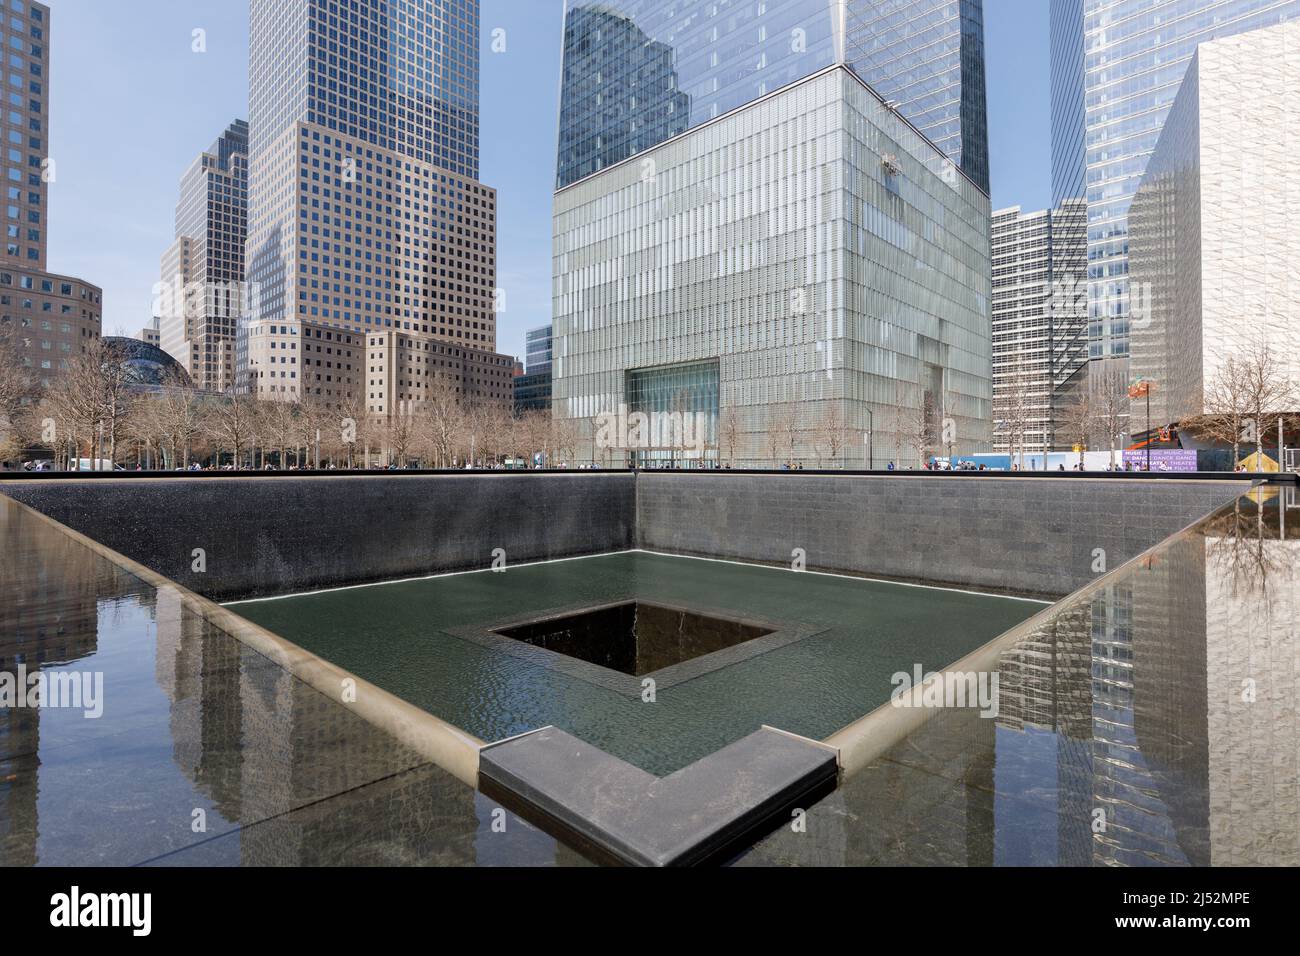 Una delle due piscine riflettenti che segna il posto delle Twin Towers, National September 11 Memorial & Museum, New York, NY, USA. Foto Stock